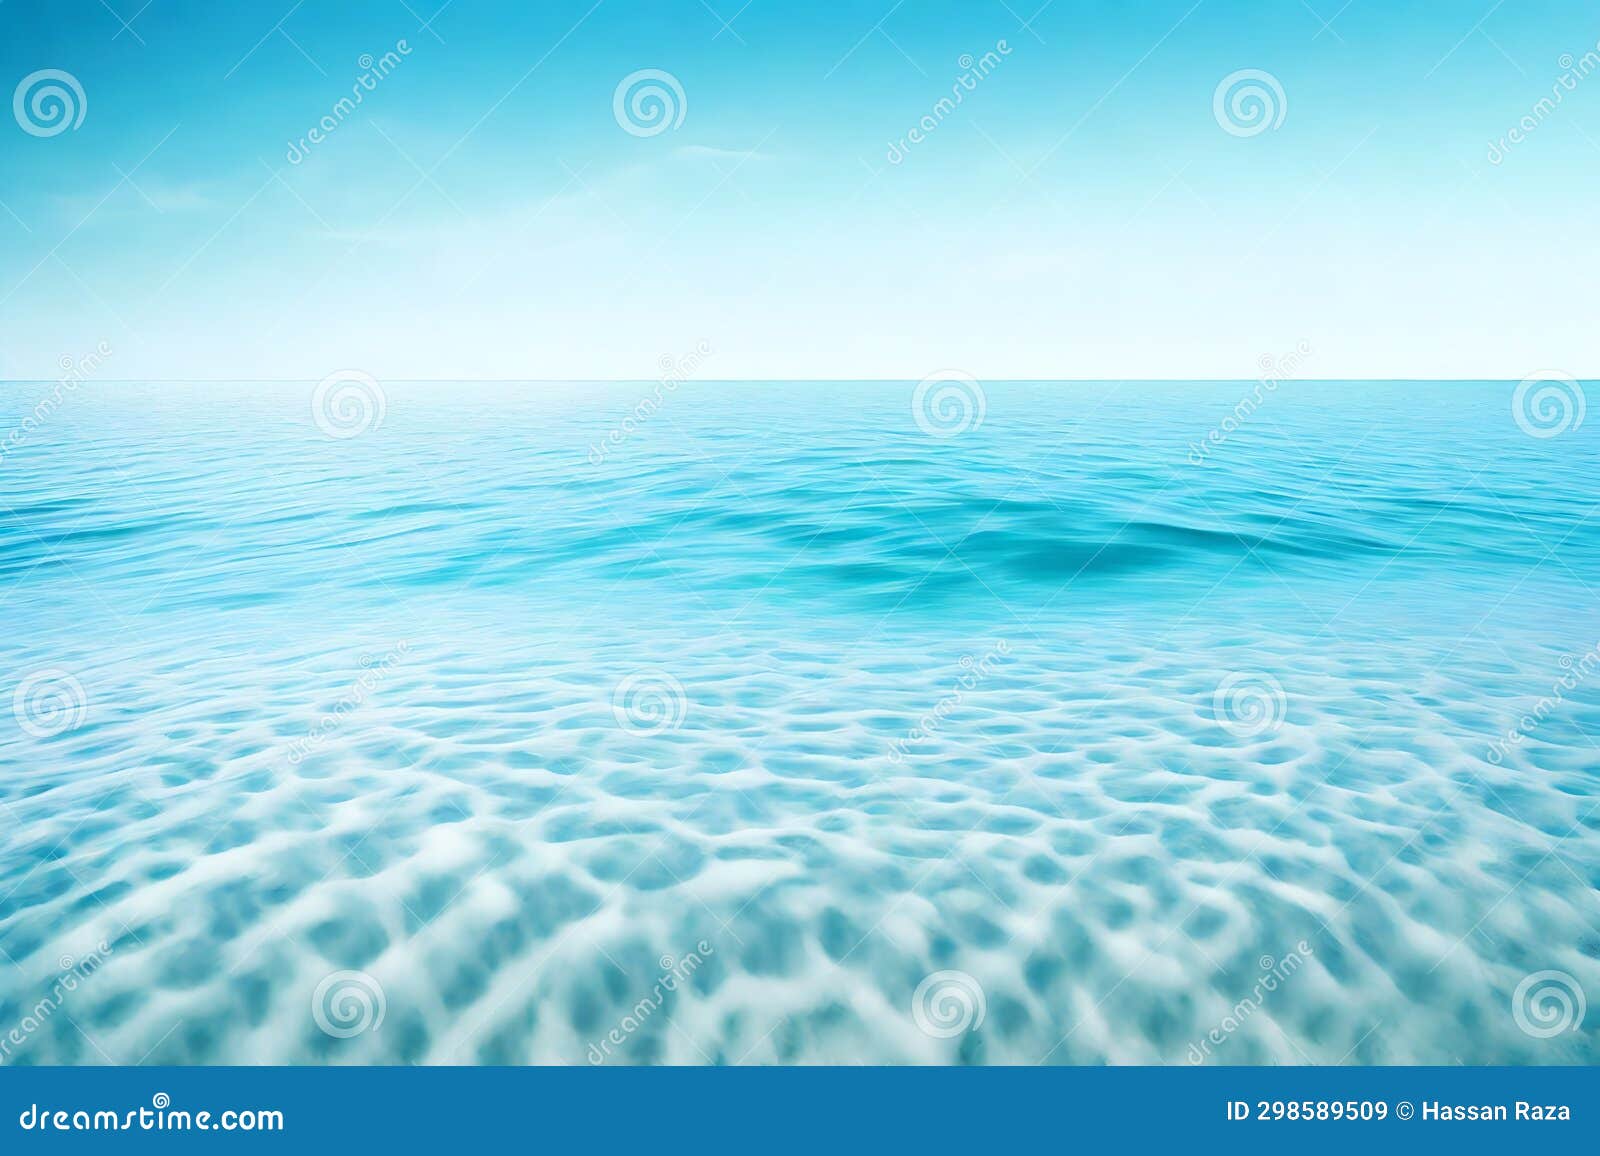 la imagen muestra un fondo natural abstracto de mar tranquilo y cielo